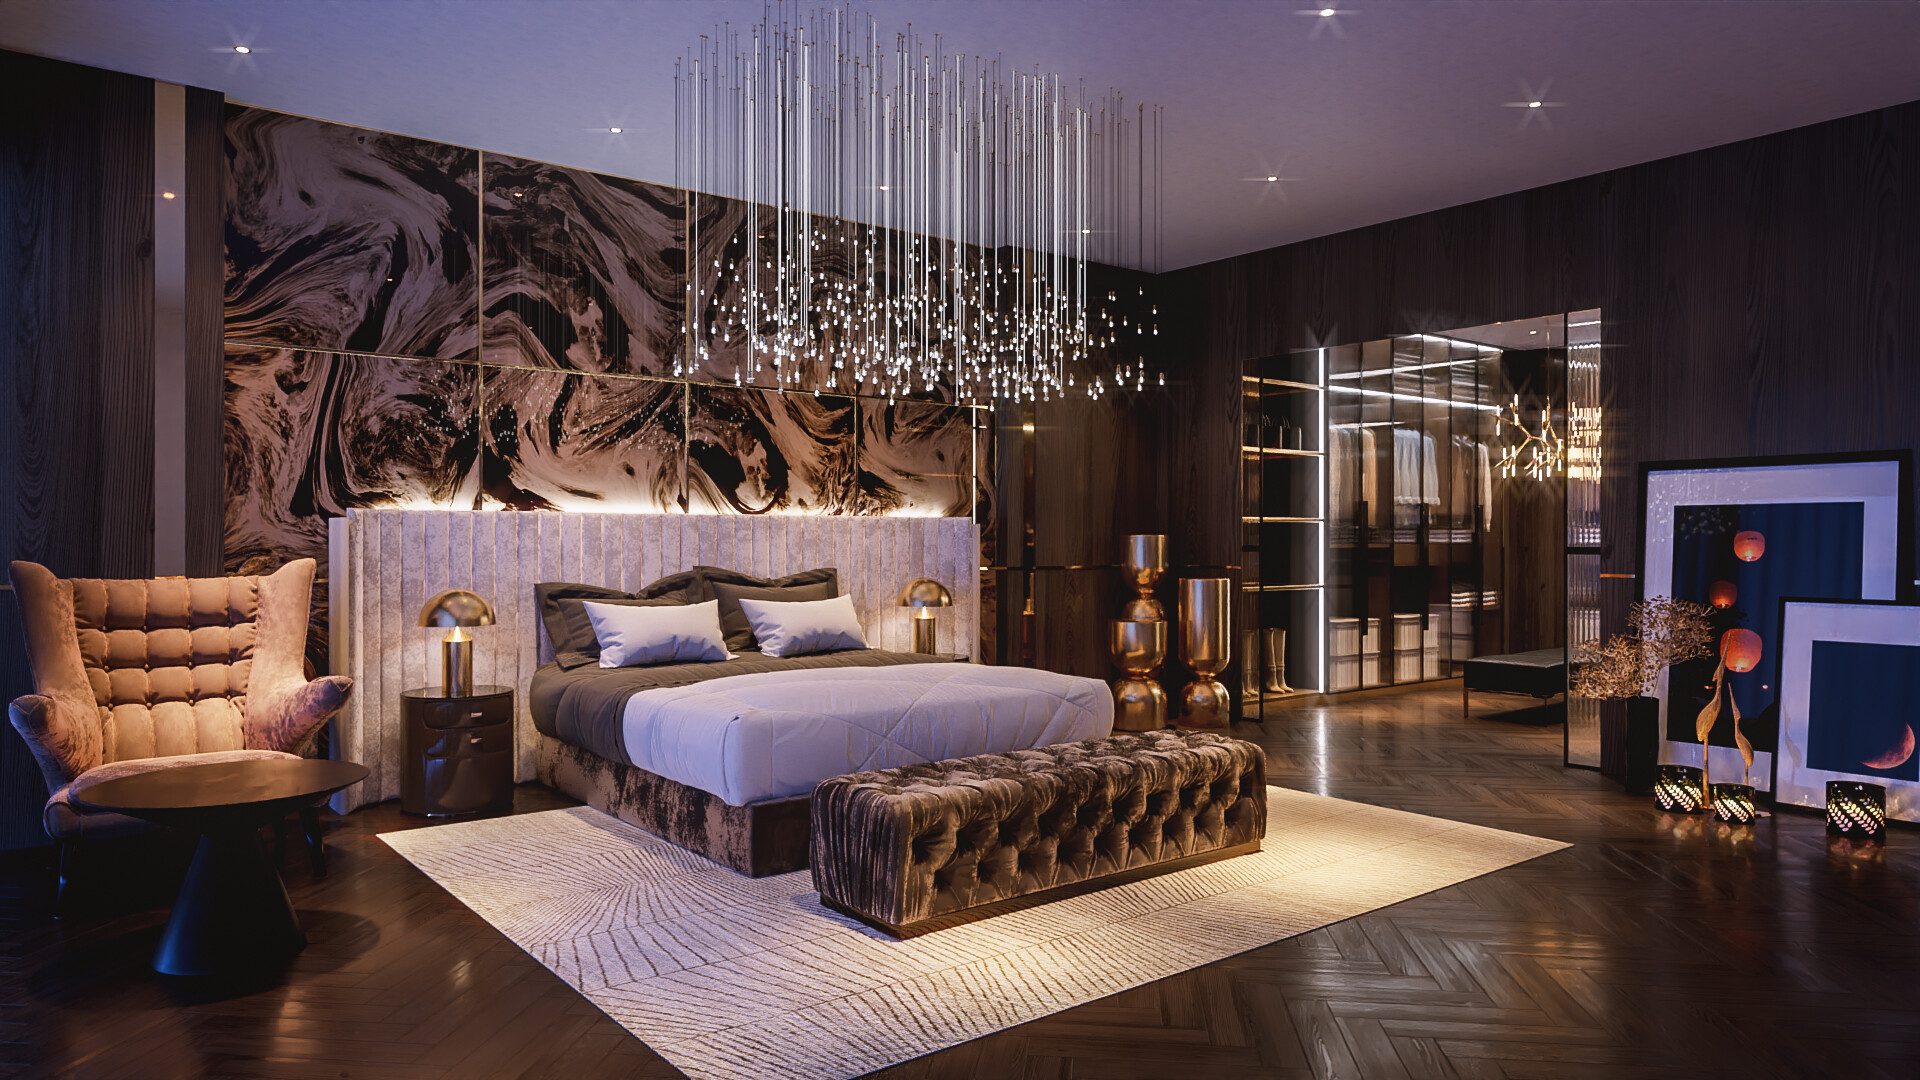 Phòng ngủ Luxury được tạo nên từ các chất liệu sang trọng như gỗ tự nhiên, kim loại PVD cao cấp